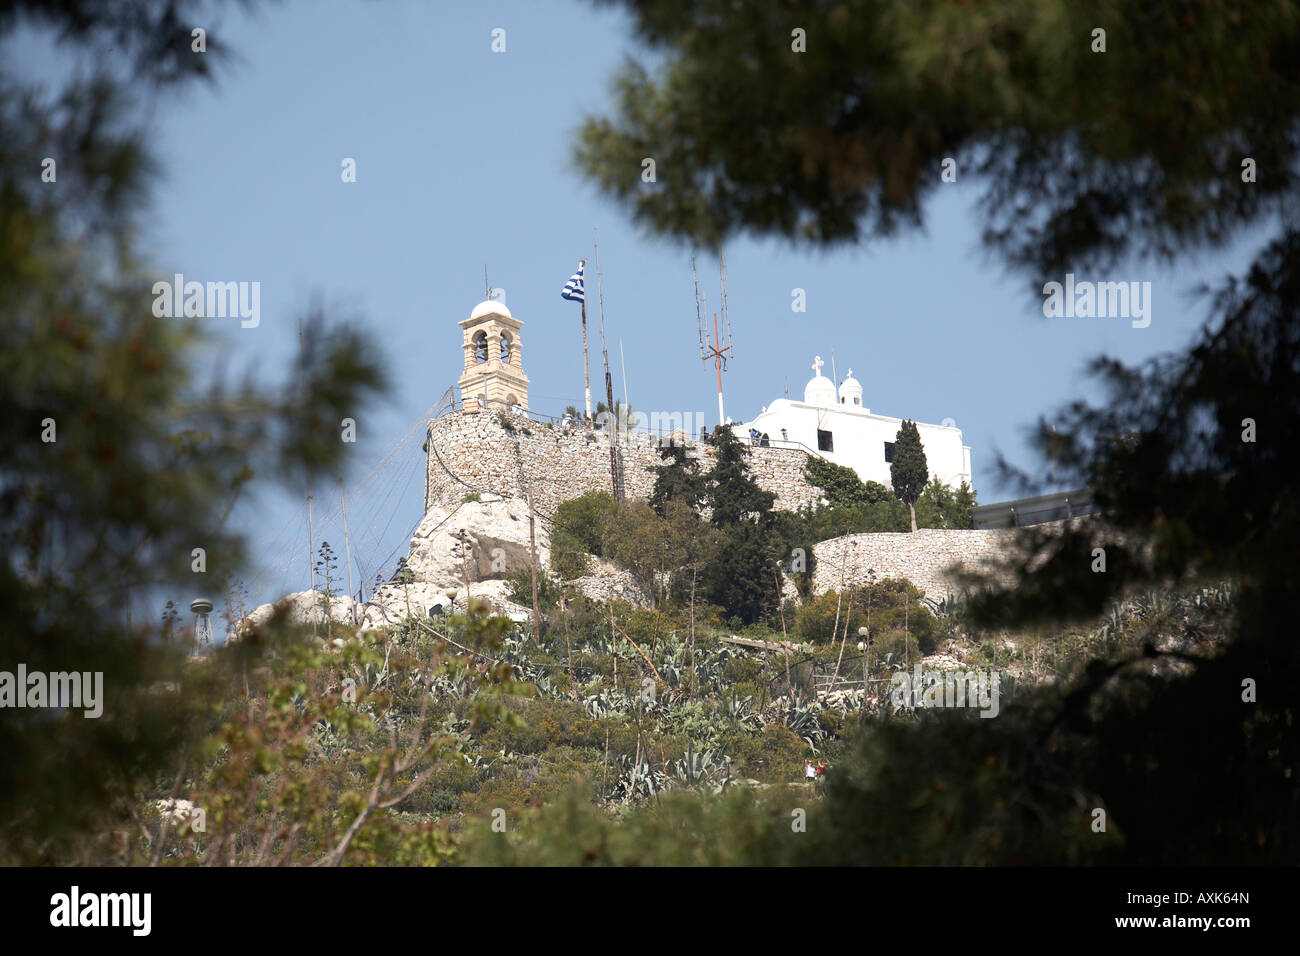 Likavitos oder Lycabbetus Hügel mit Agios Georgios griechisch-orthodoxen Kirche gesehen durch Kiefern in Athen oder Athini Griechenland Stockfoto